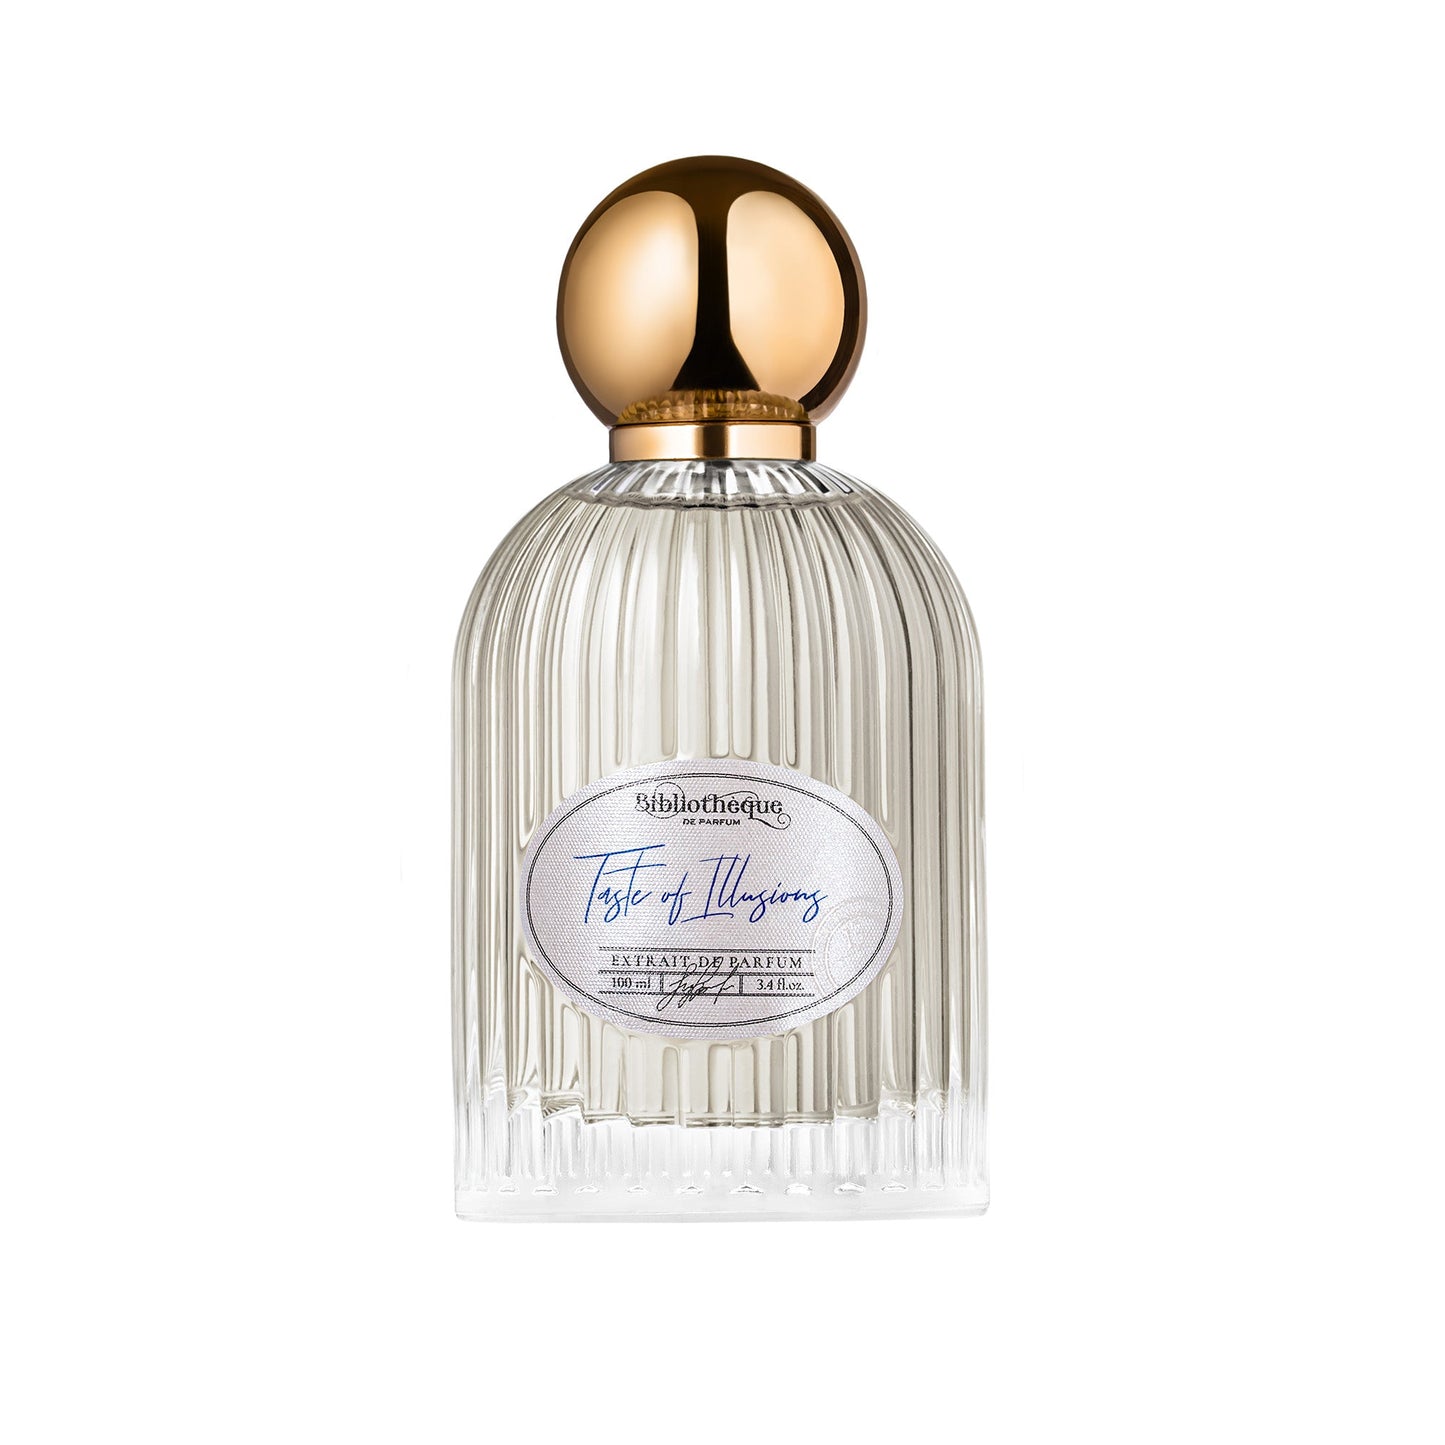 Parfum Femme - Taste of Illusion- Bibliotheque de Parfum